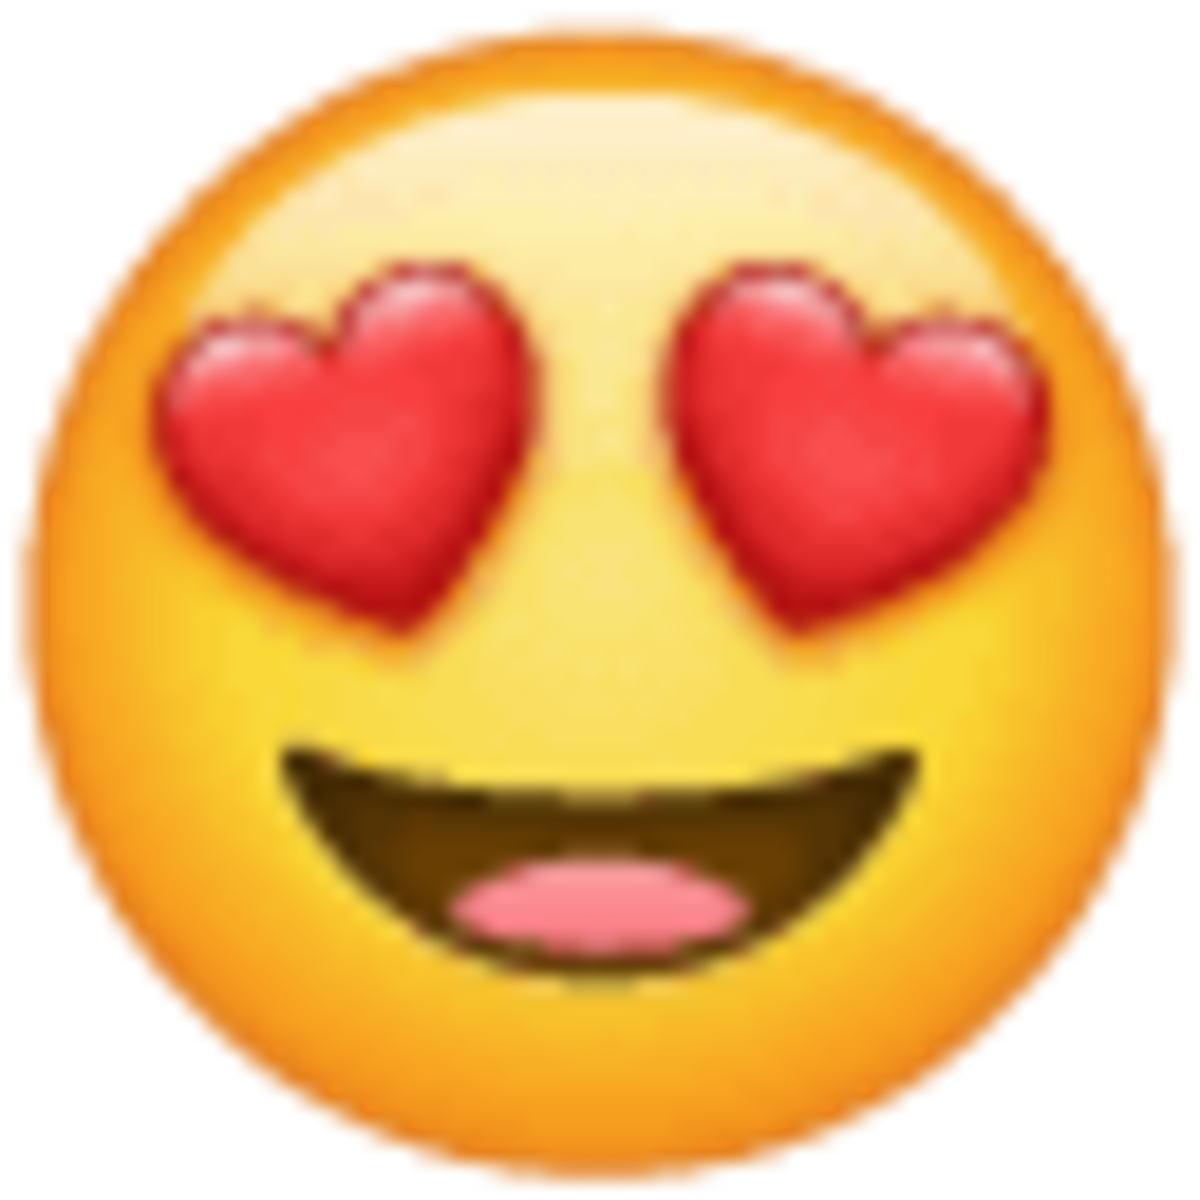 emoji 1f60d, cara con corazones por ojos